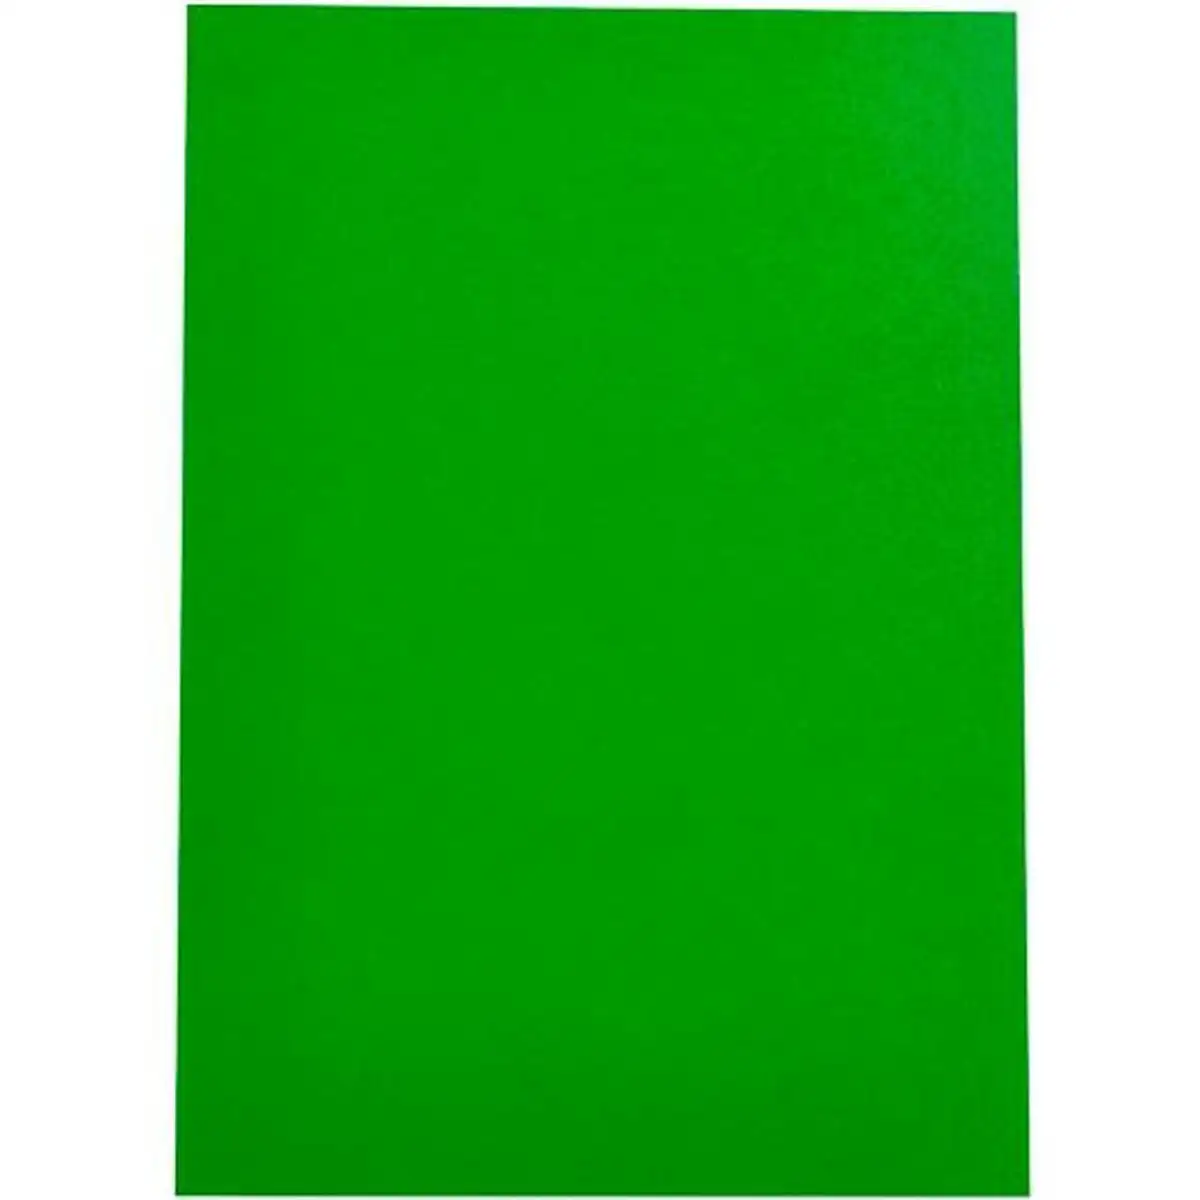 Couvertures de reliure displast vert a4 polypropylene 50 unites _1122. Bienvenue chez DIAYTAR SENEGAL - Où Votre Shopping Prend Vie. Découvrez notre univers et dénichez des trésors qui ajoutent de la couleur à votre quotidien.